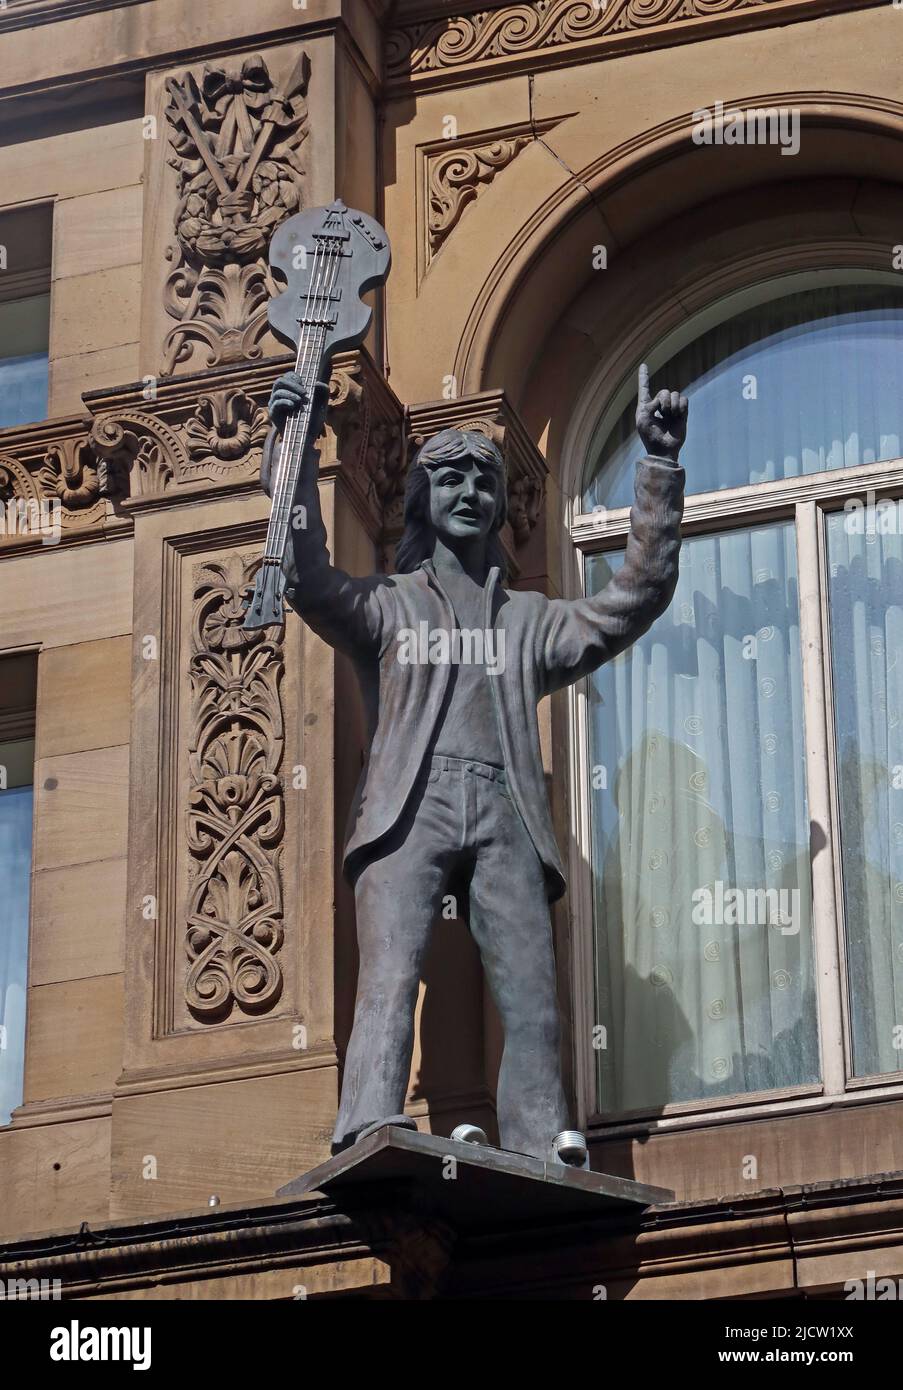 Paul McCartney - The Liverpool Beatle statues - The Fab four, autour de l'extérieur de Hard Day's Night Hotel, Central Buildings, N John St, Liverpool L2 6RR Banque D'Images